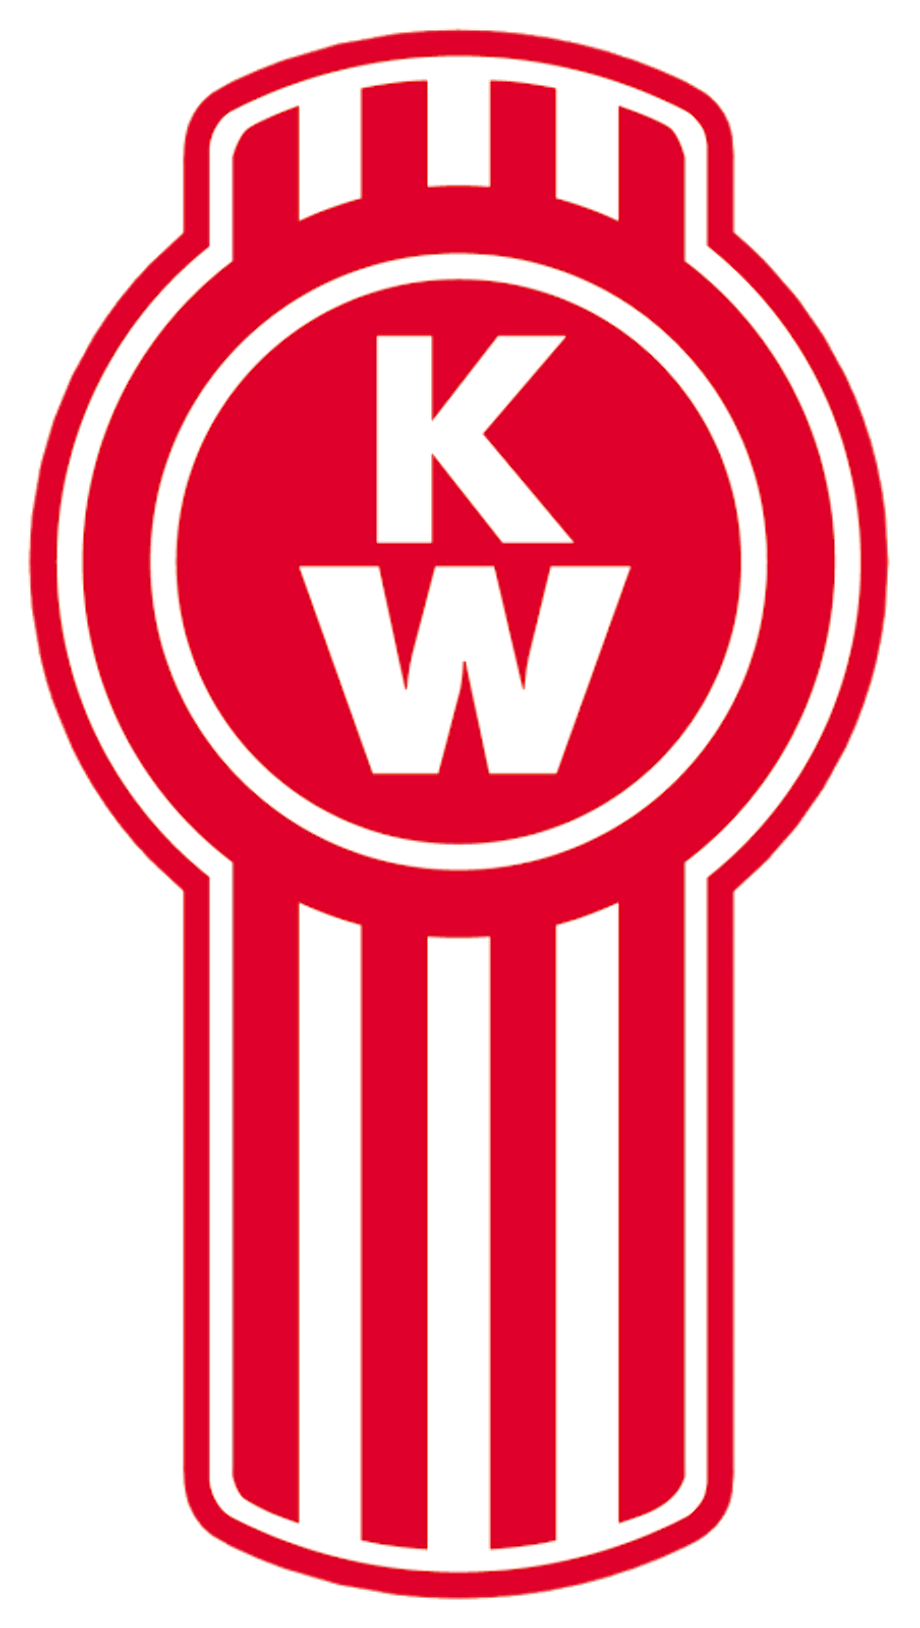 Download High Quality kenworth logo svg Transparent PNG ...